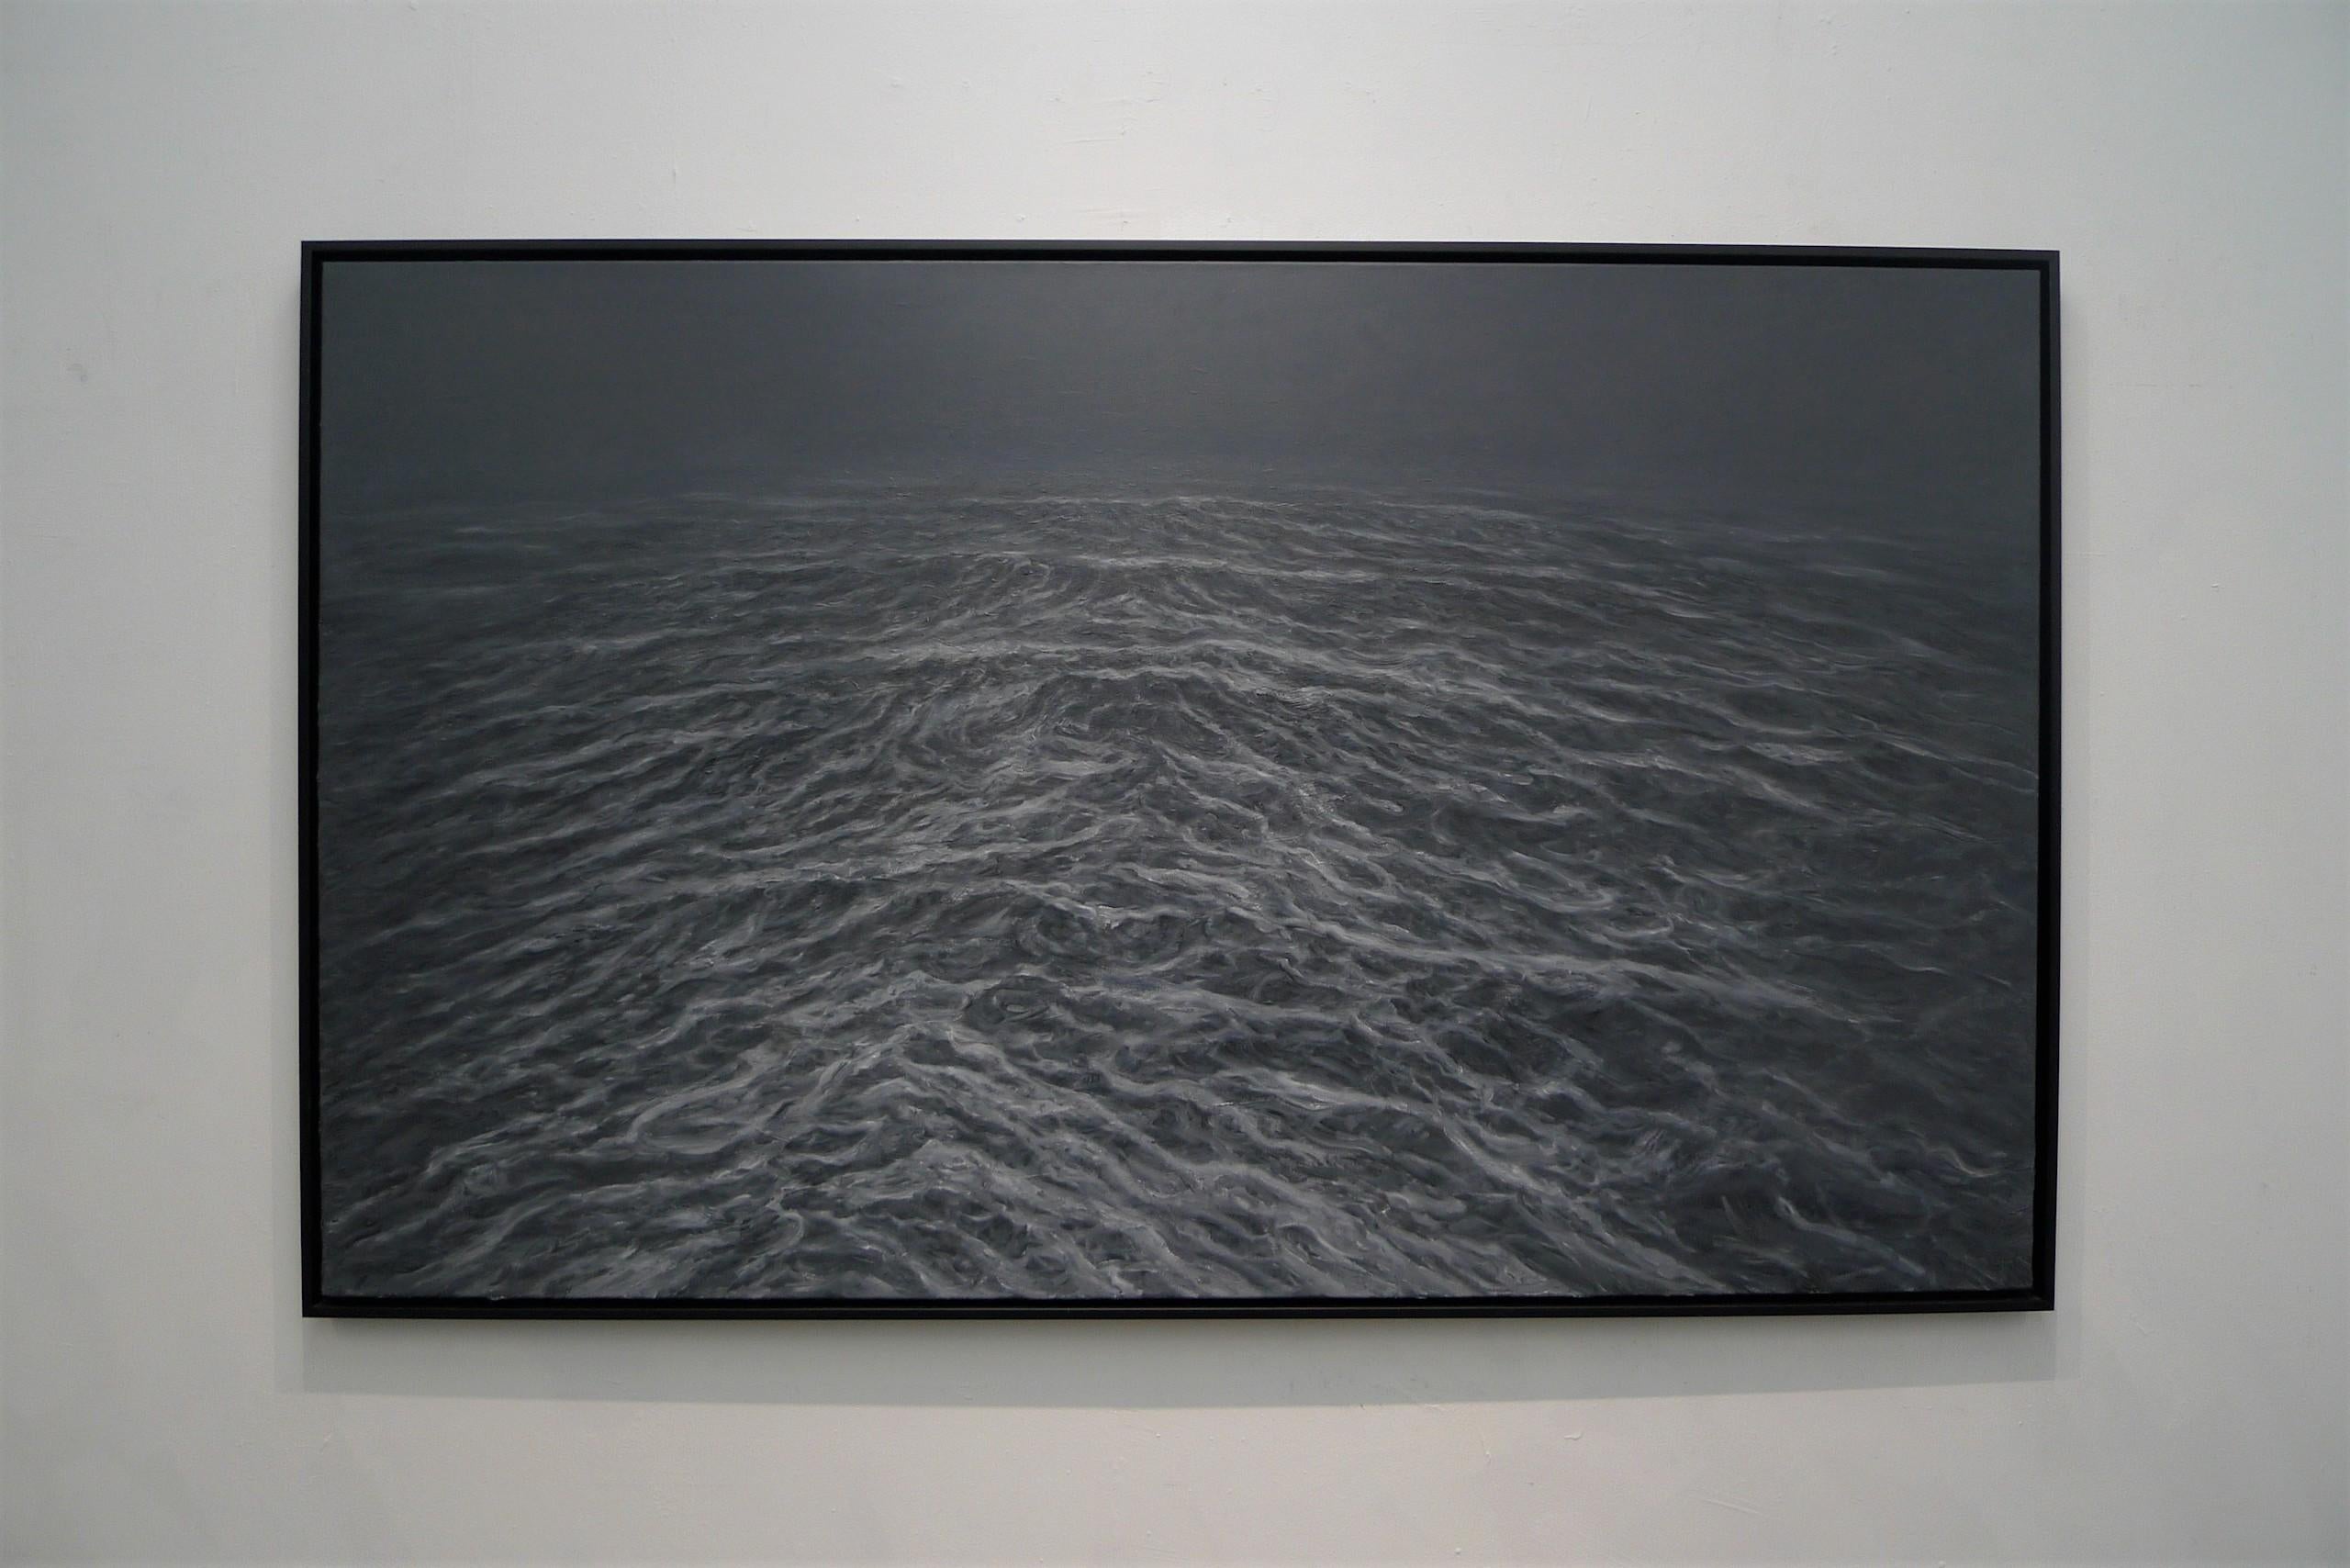 Black Sea by Franco Salas Borquez - Contemporary oil painting, seascape For Sale 2